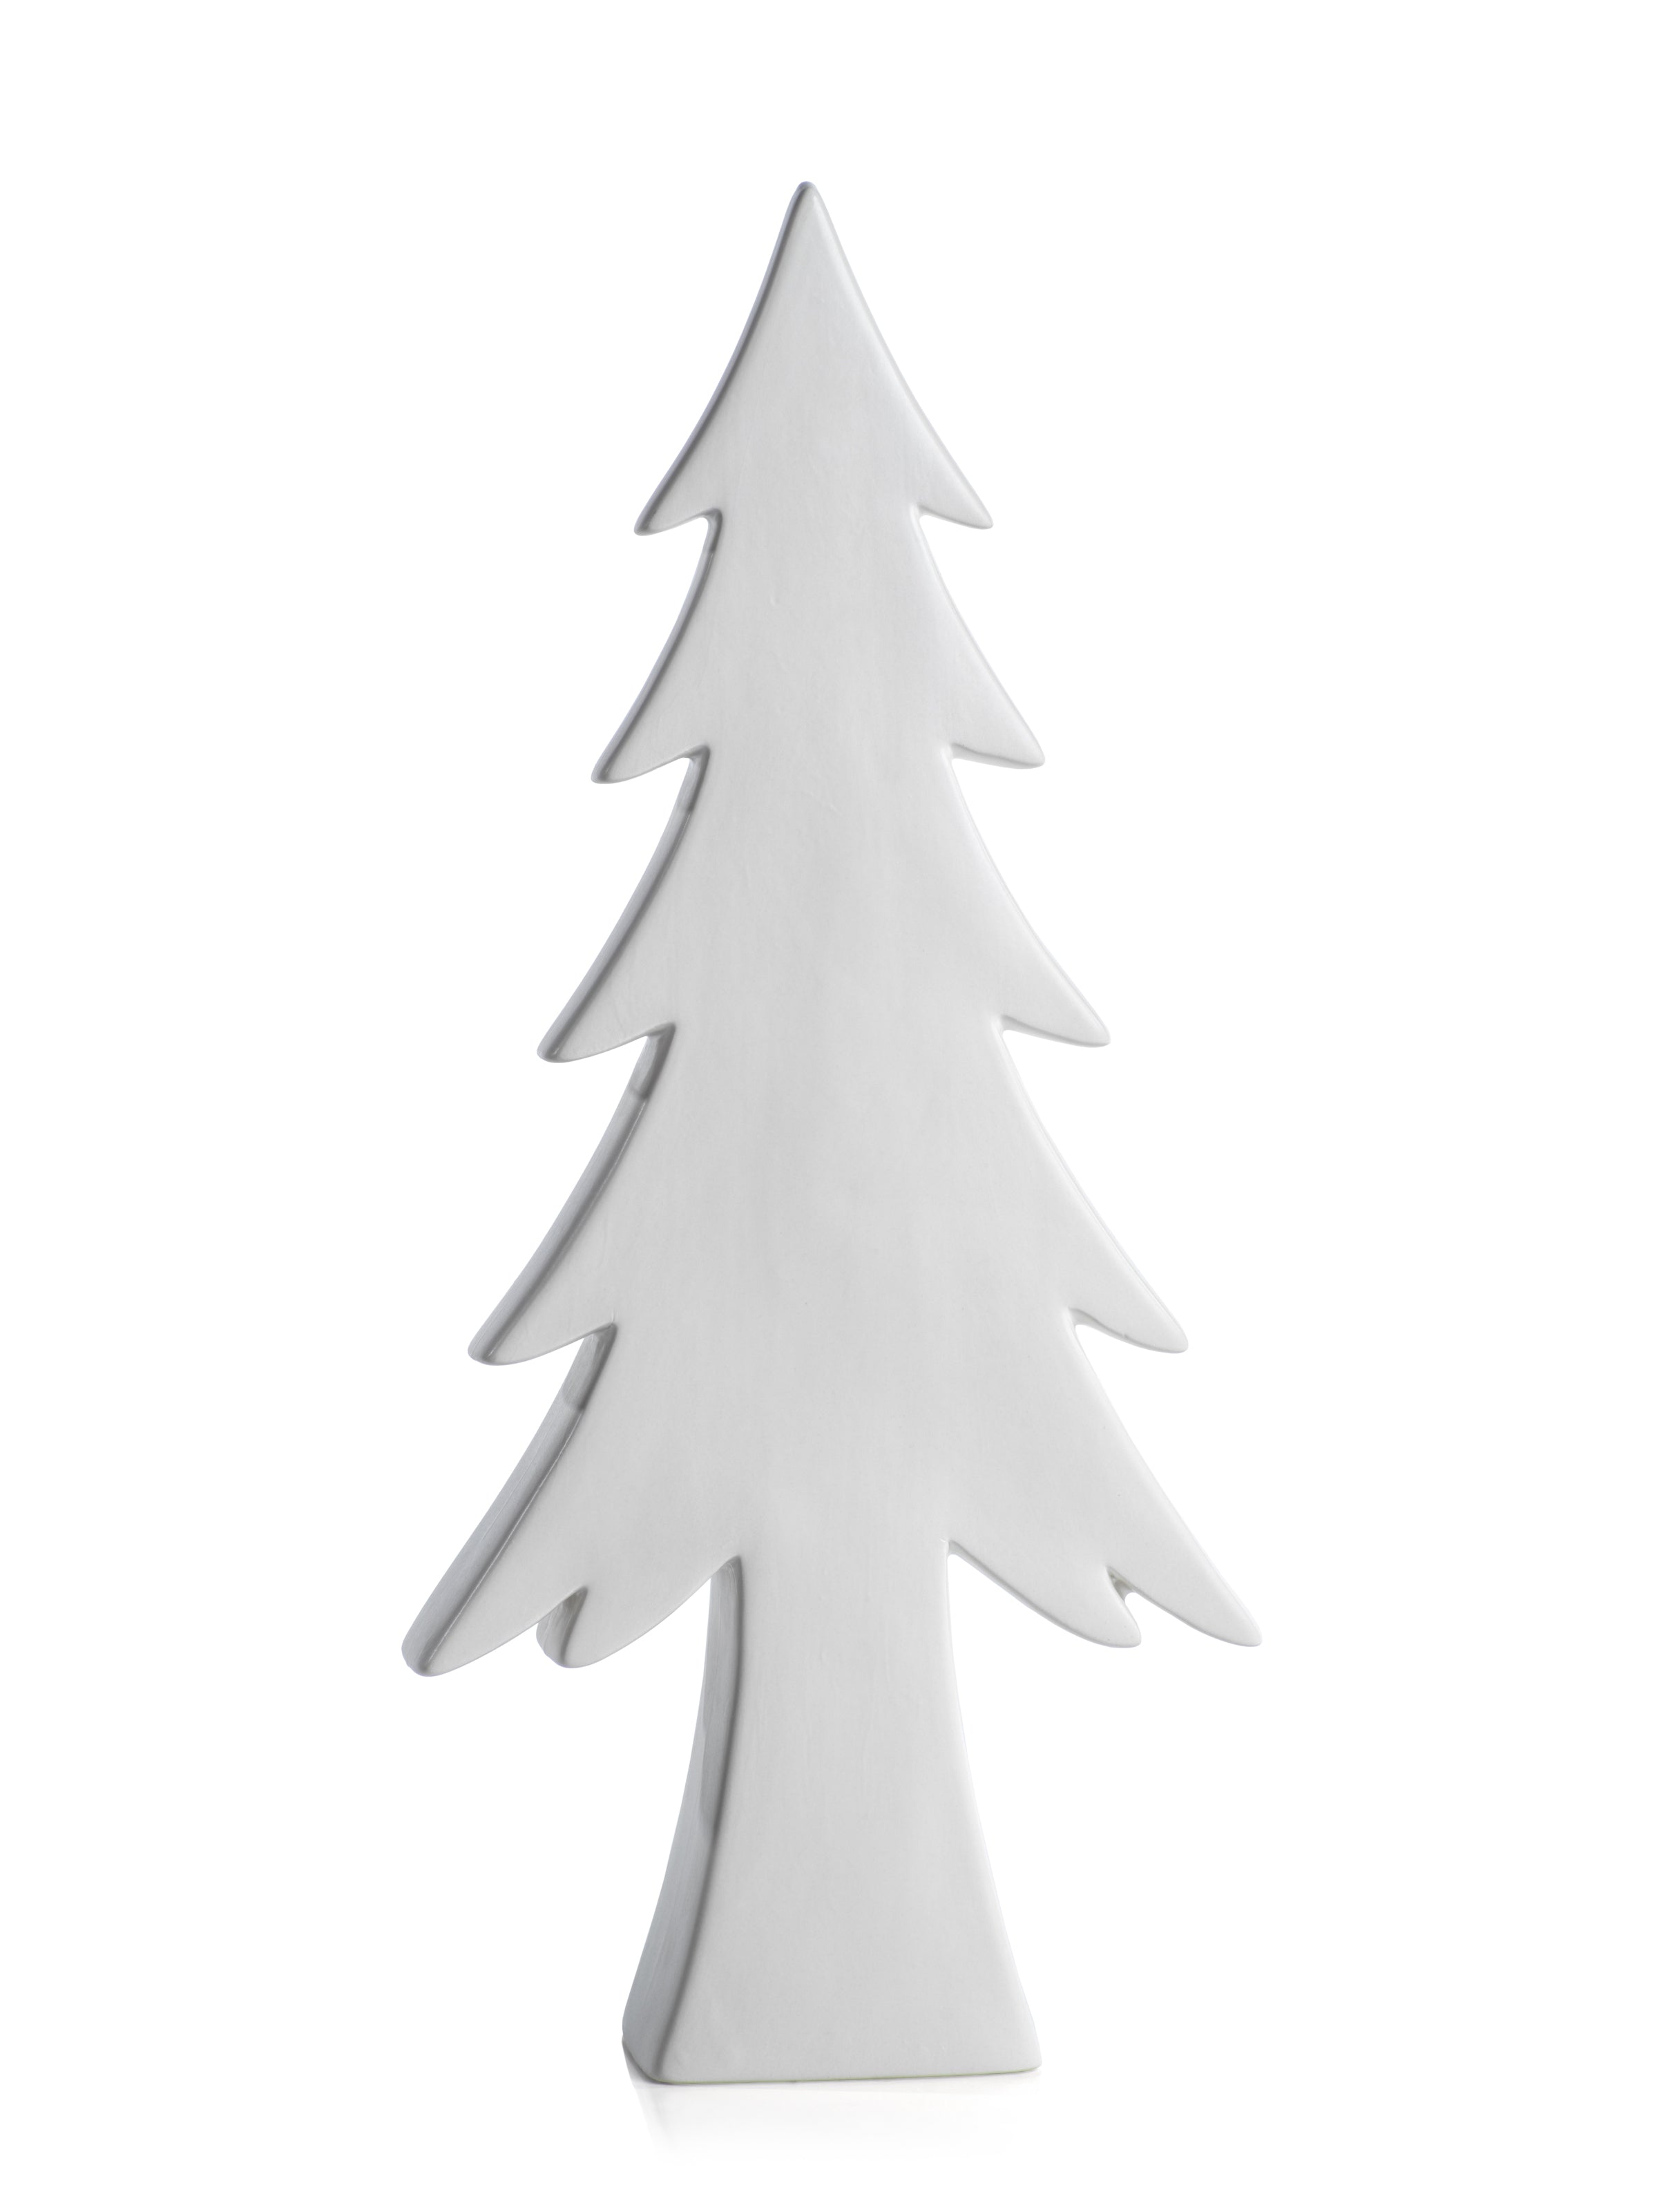 Matt White Decorative Tree - CARLYLE AVENUE